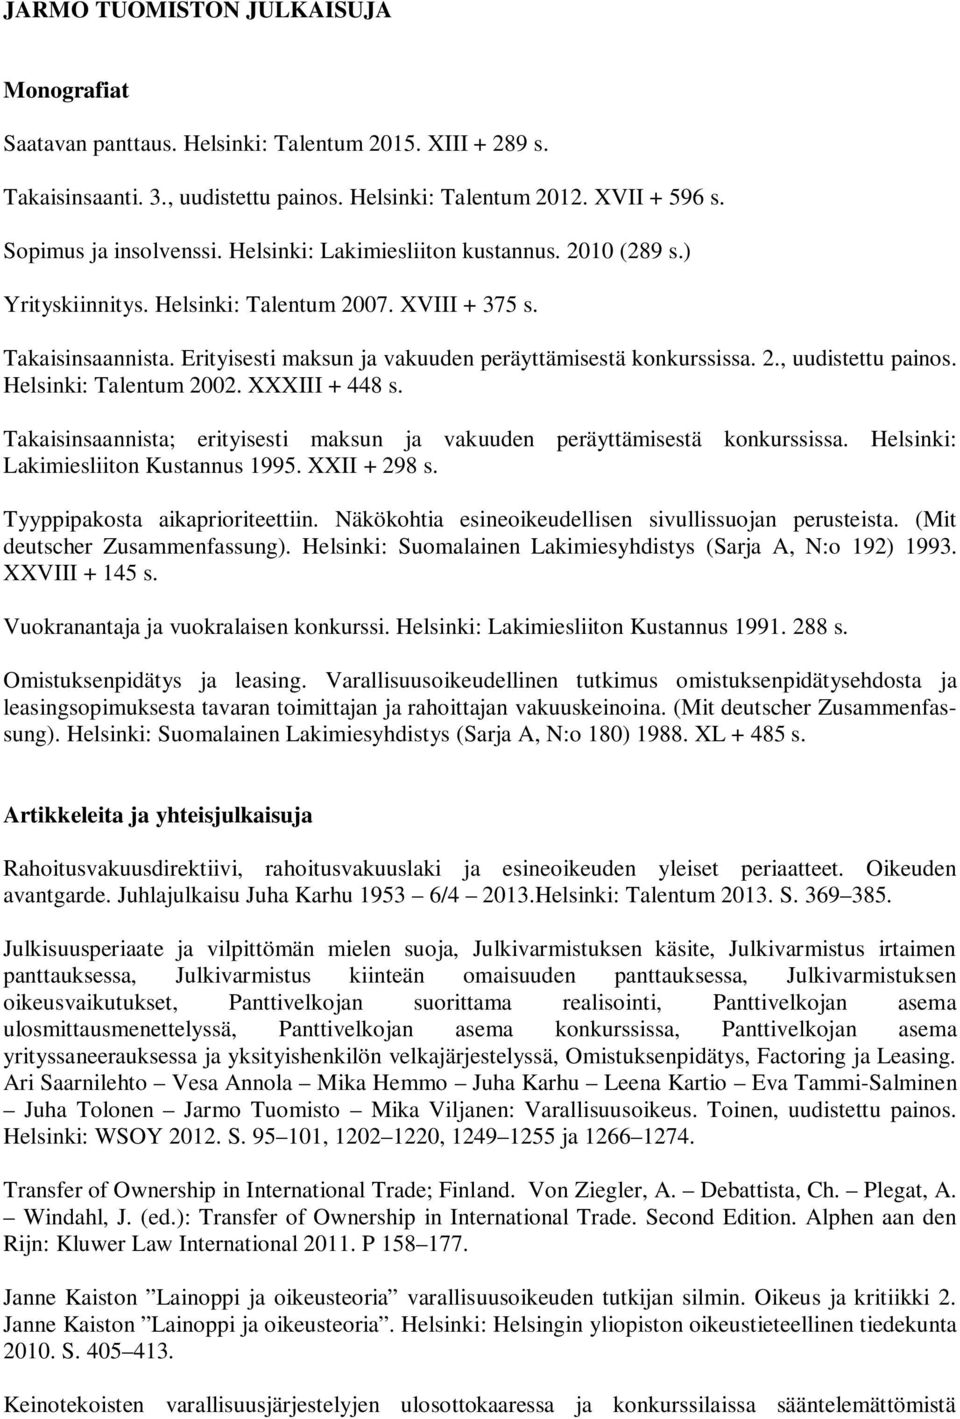 Helsinki: Talentum 2002. XXXIII + 448 s. Takaisinsaannista; erityisesti maksun ja vakuuden peräyttämisestä konkurssissa. Helsinki: Lakimiesliiton Kustannus 1995. XXII + 298 s.